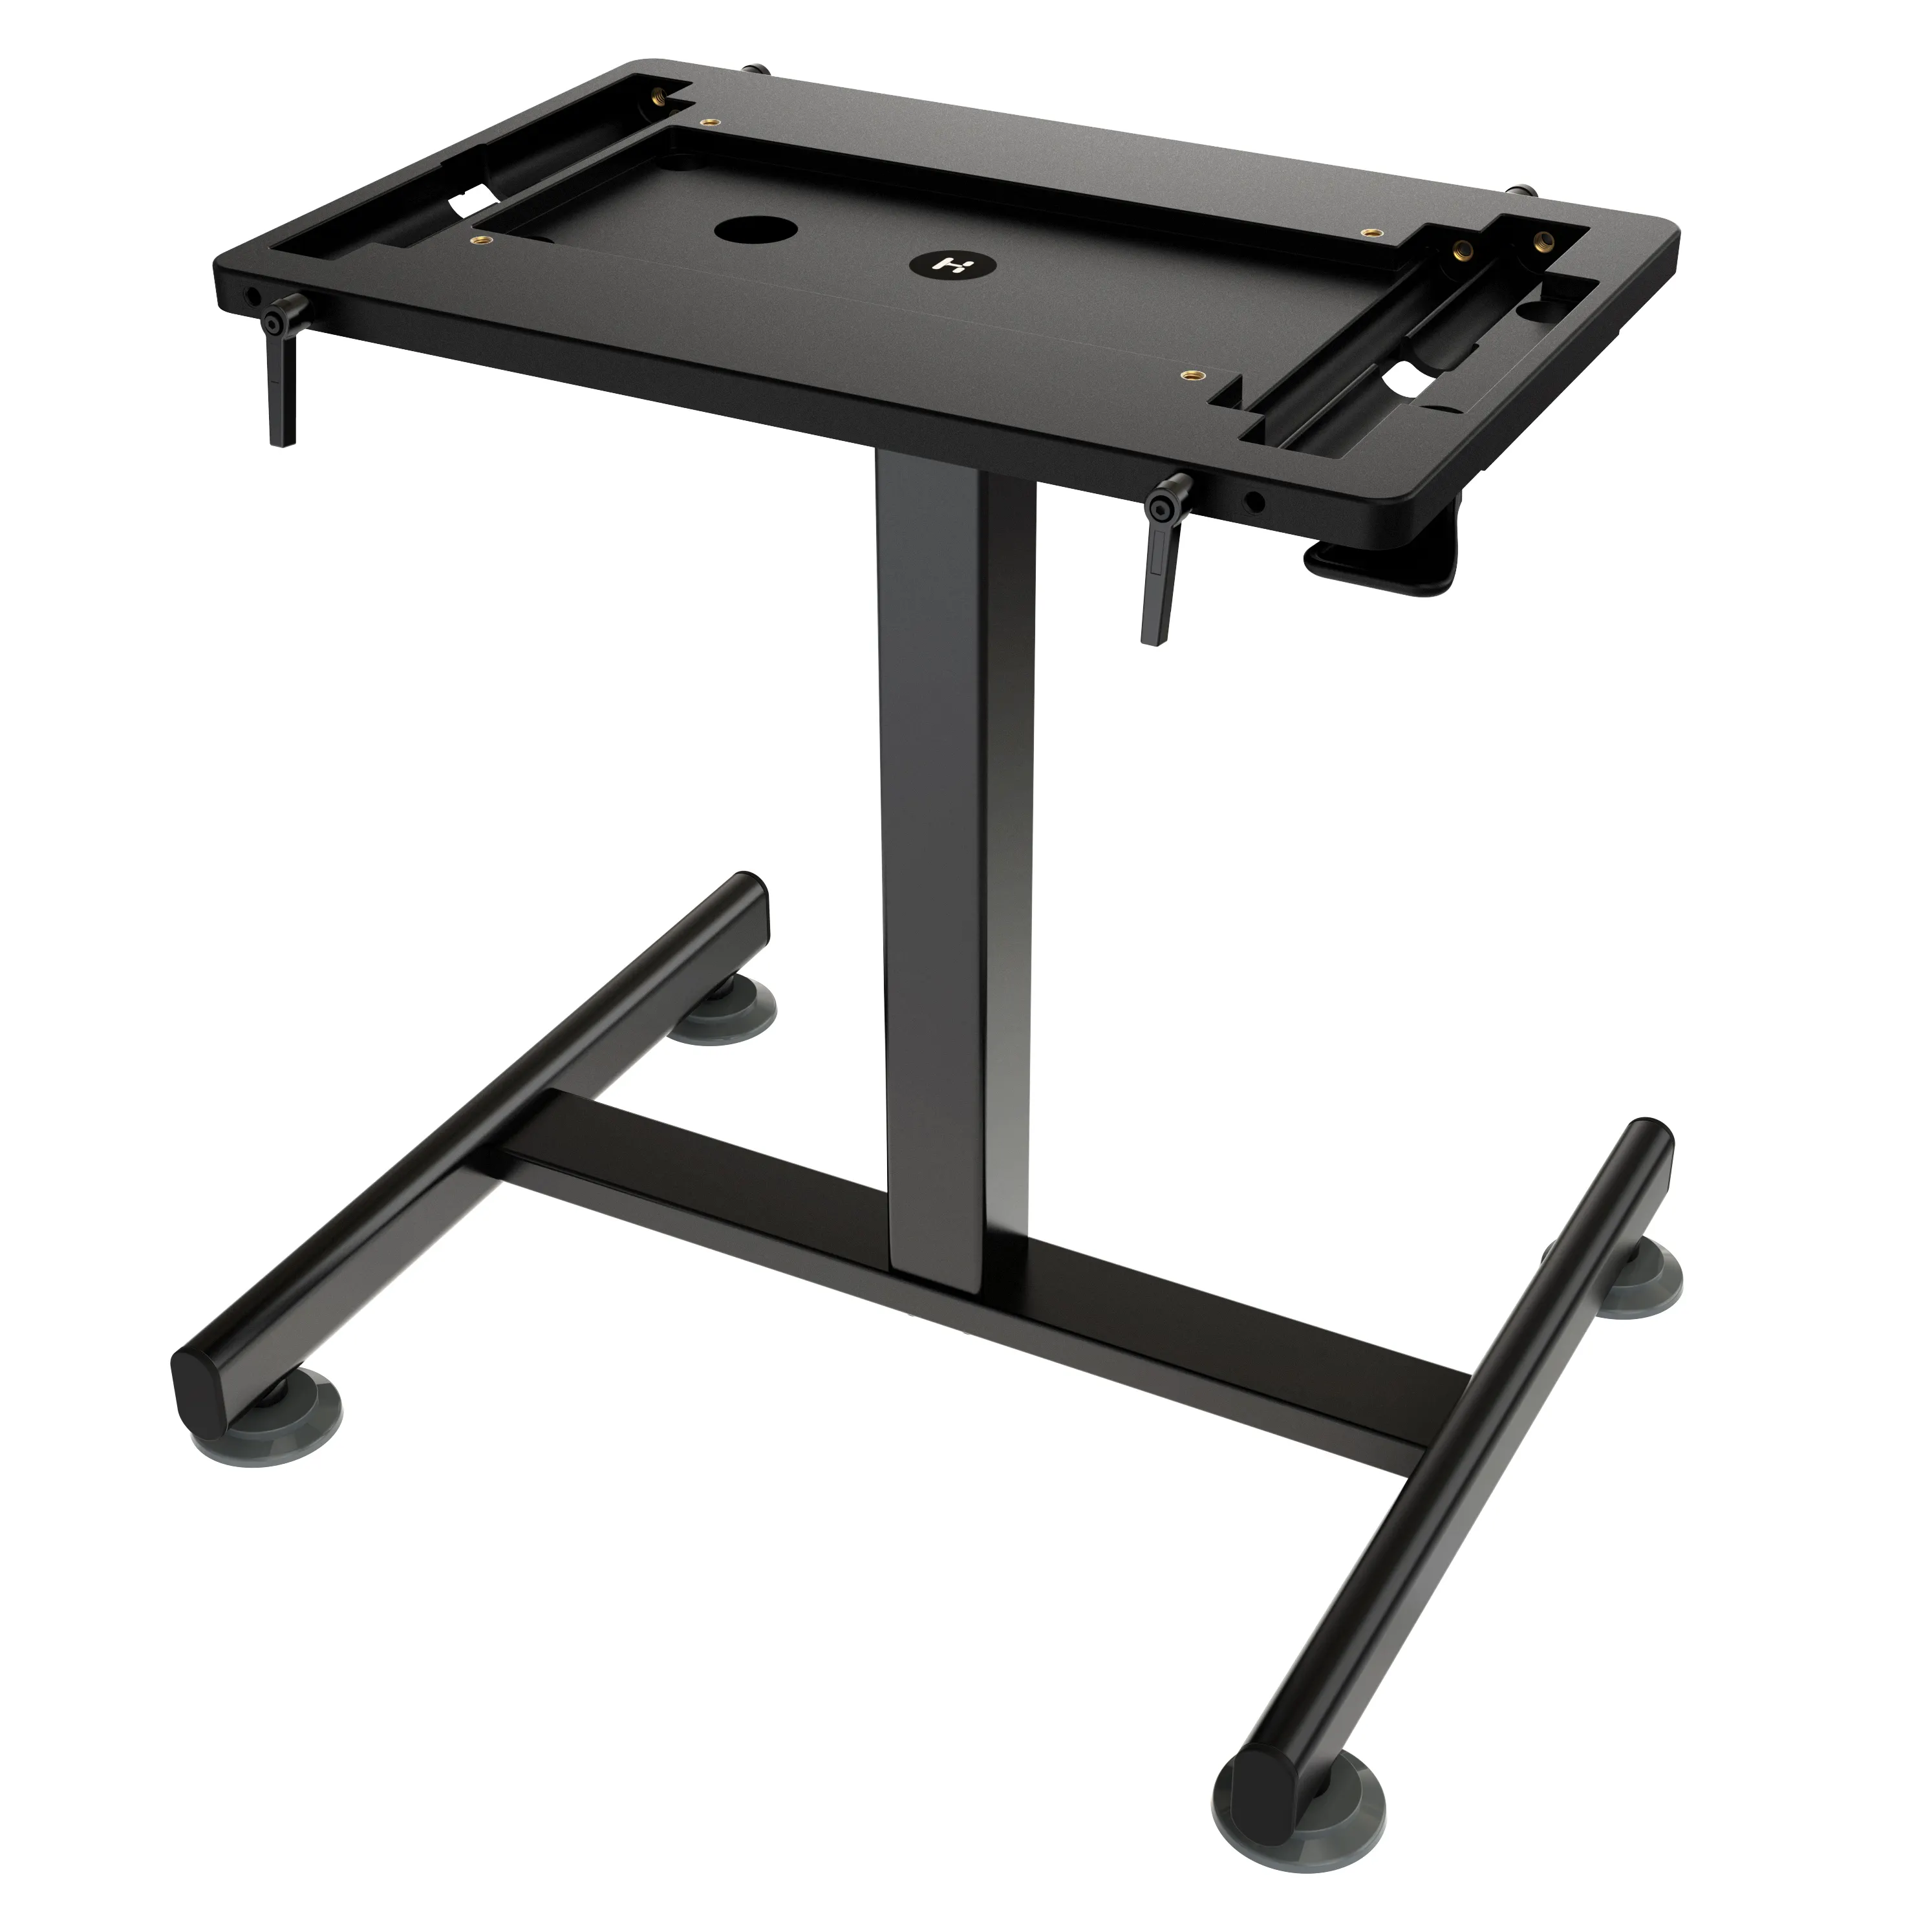 プレミアム3.0/4.0用のHismith調整可能空気圧スタンドおよびラブマシン用のテーブルトップシリーズセックスマシン高さ調整可能テーブル